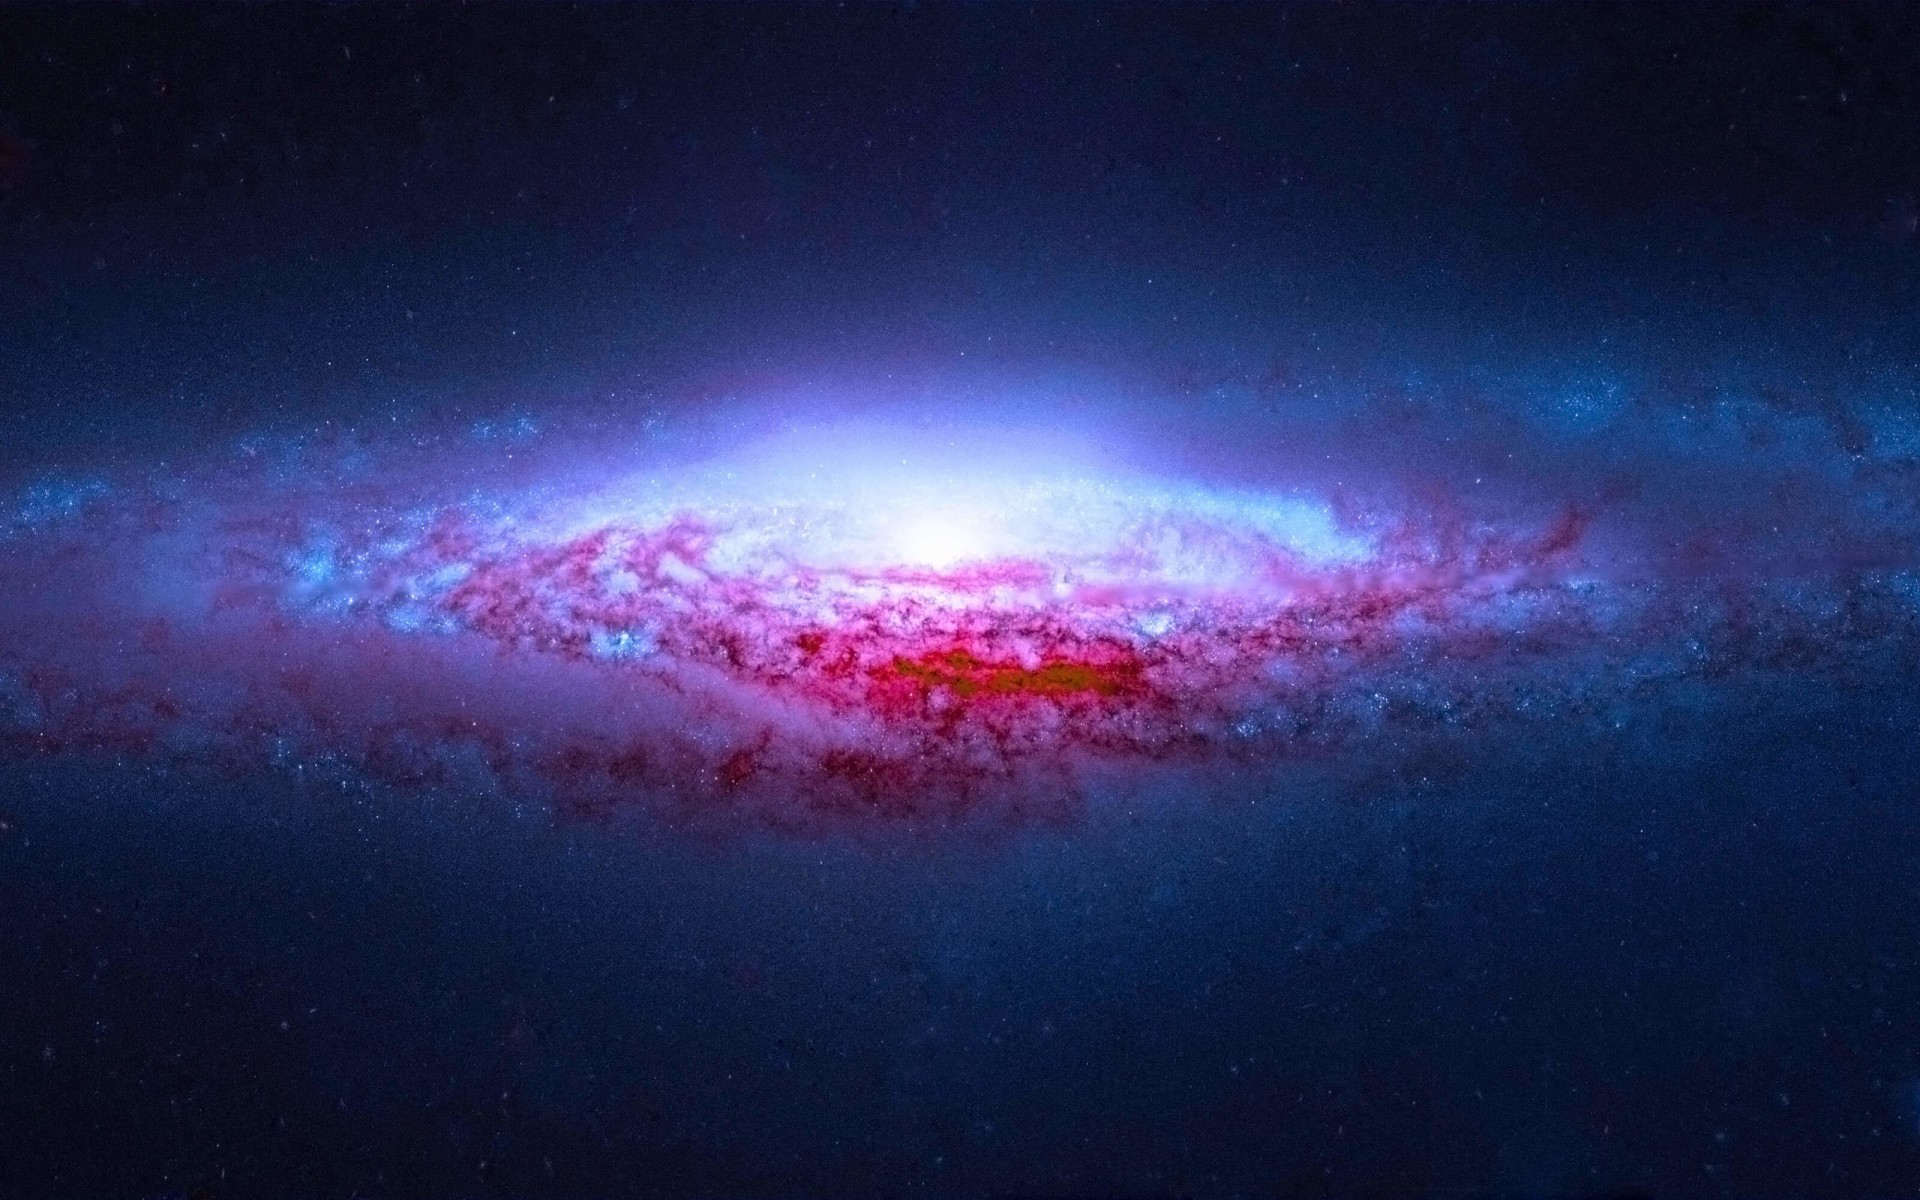 NGC 2683 Spiral Galaxy Wallpaper for Desktop 1920x1200